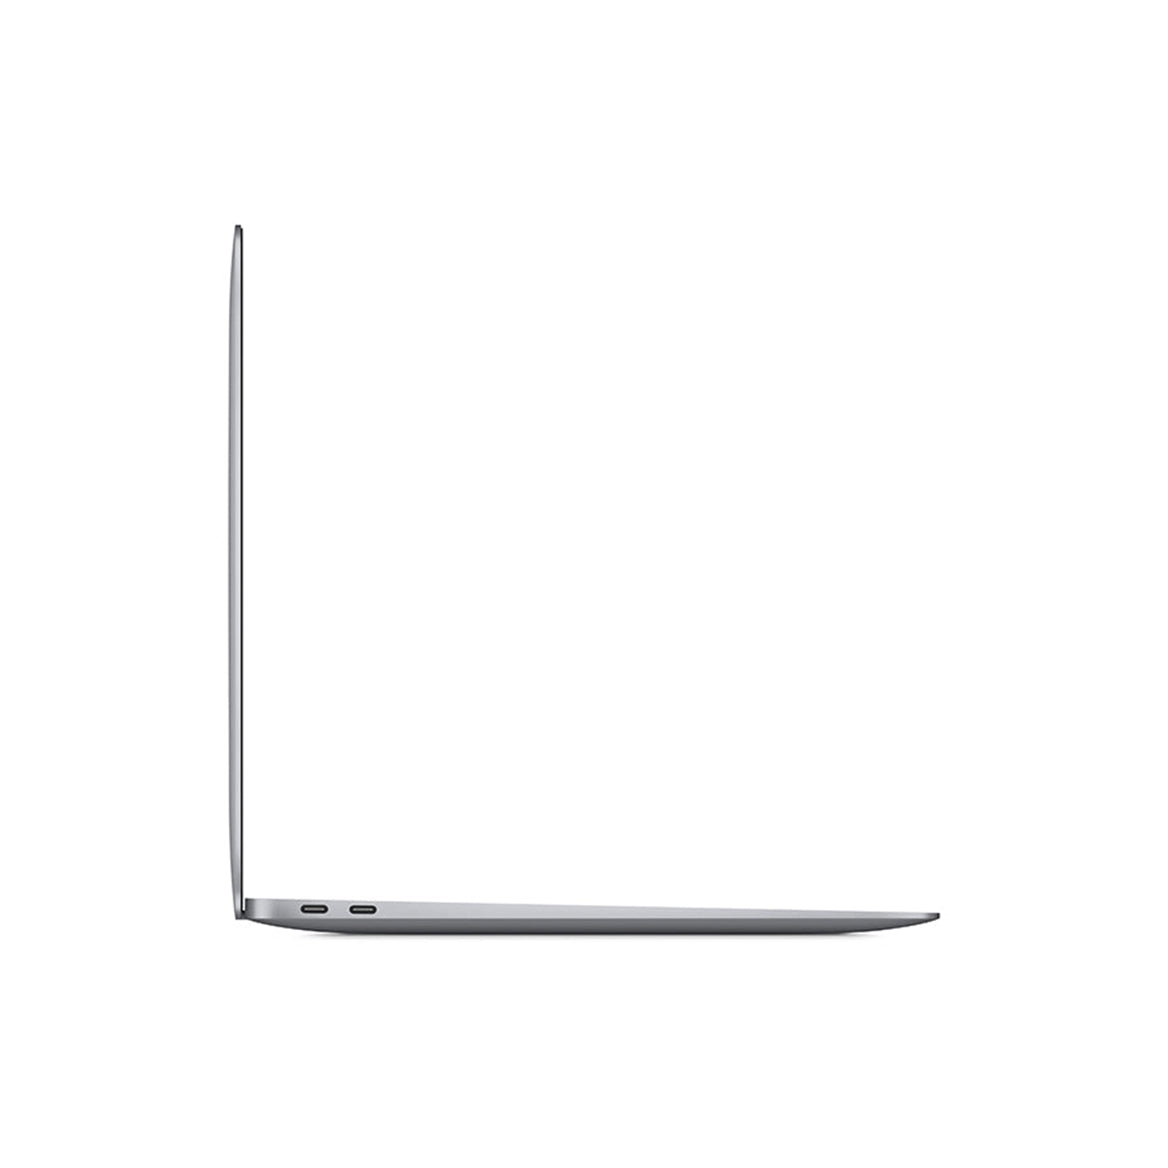 MacBook Air M1 2020 space grey side view